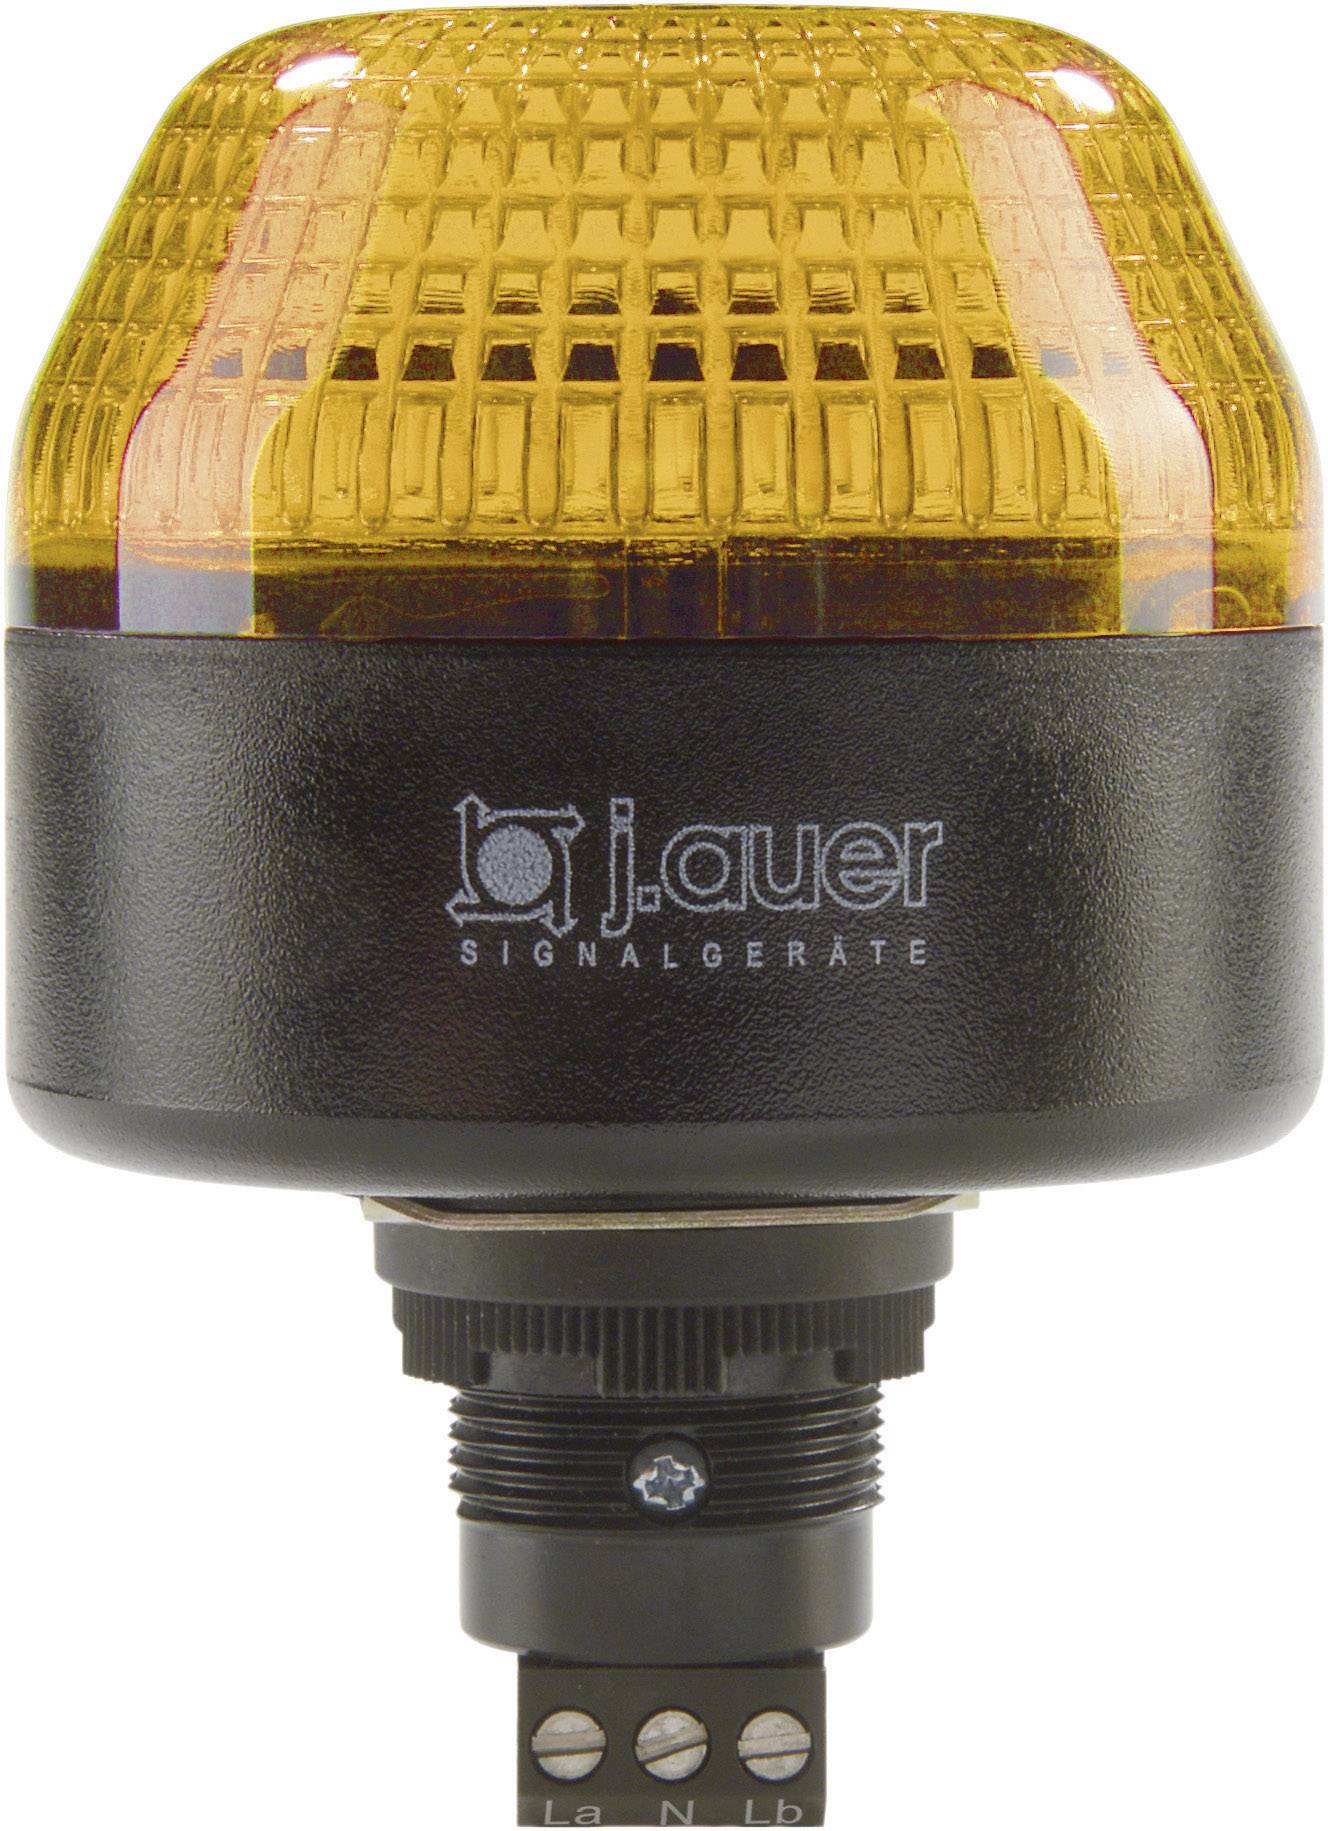 AUER SIGNAL Signalleuchte LED Auer Signalgeräte IBL Orange Dauerlicht, Blinklicht 230 V/AC